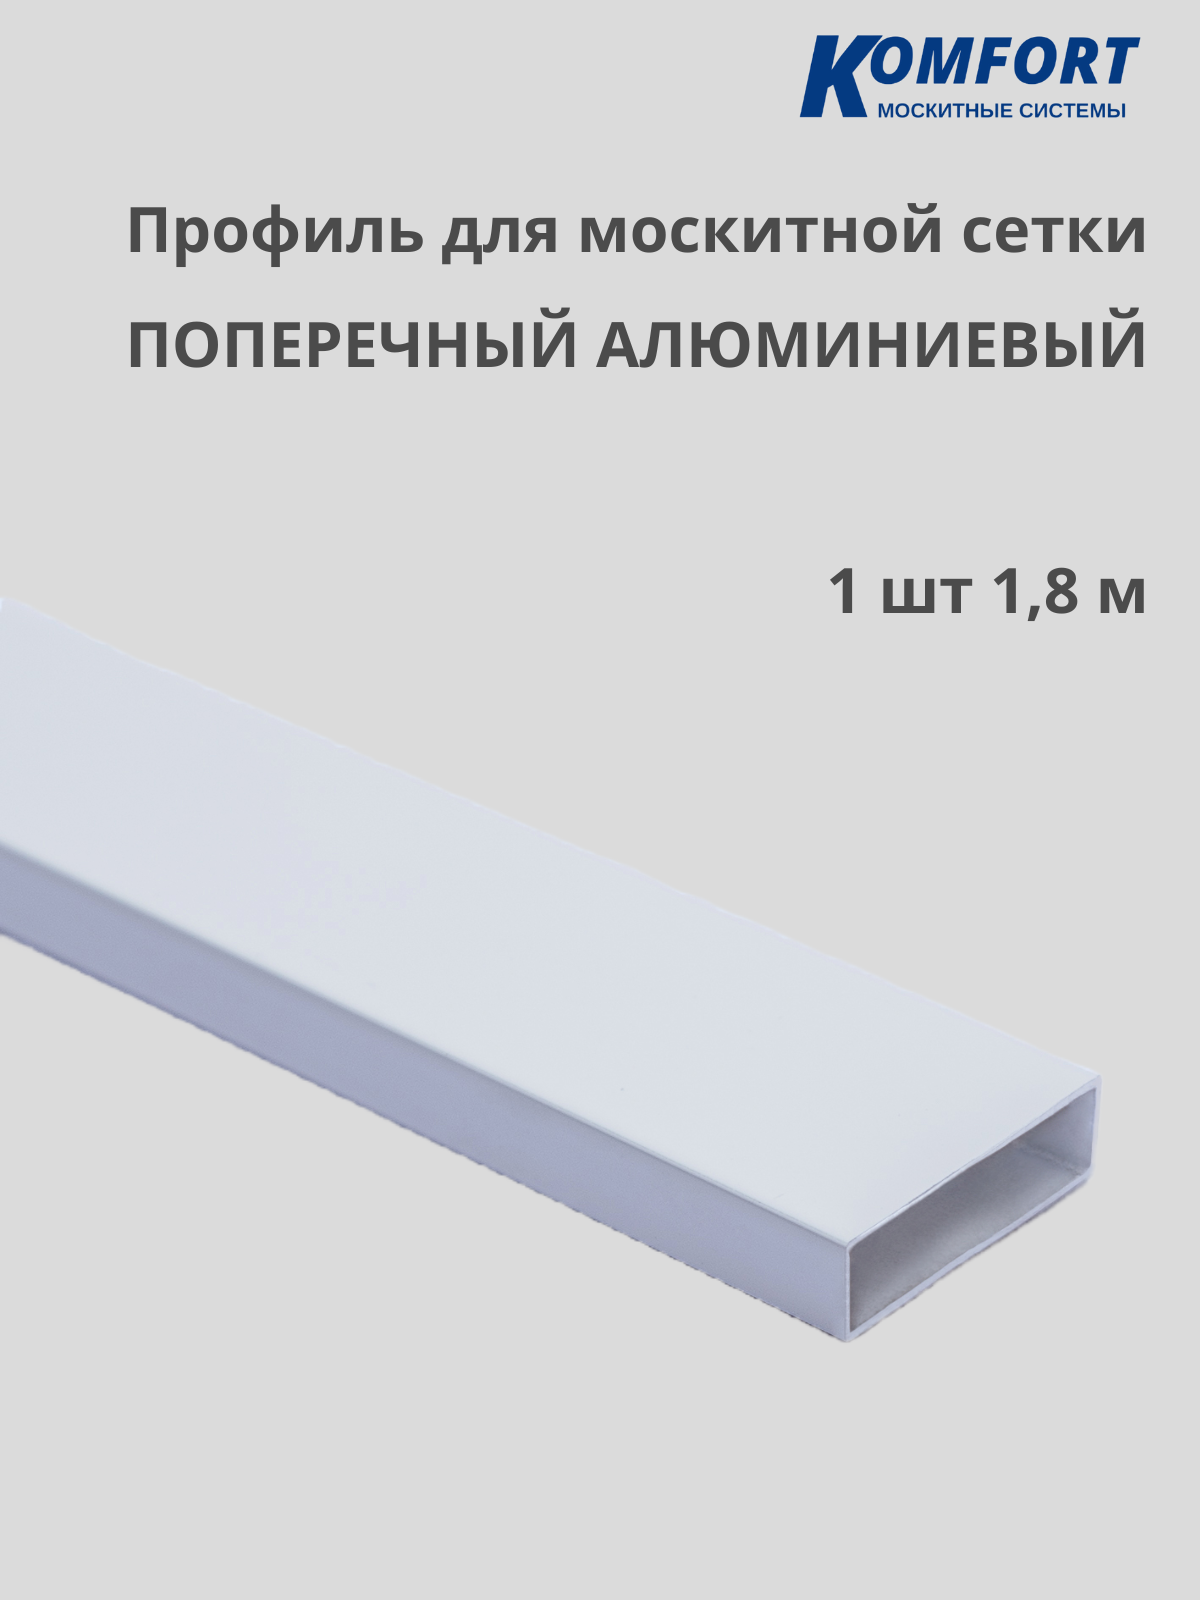 Профиль для москитной сетки поперечный алюминиевый белый 1,8 м 1 шт